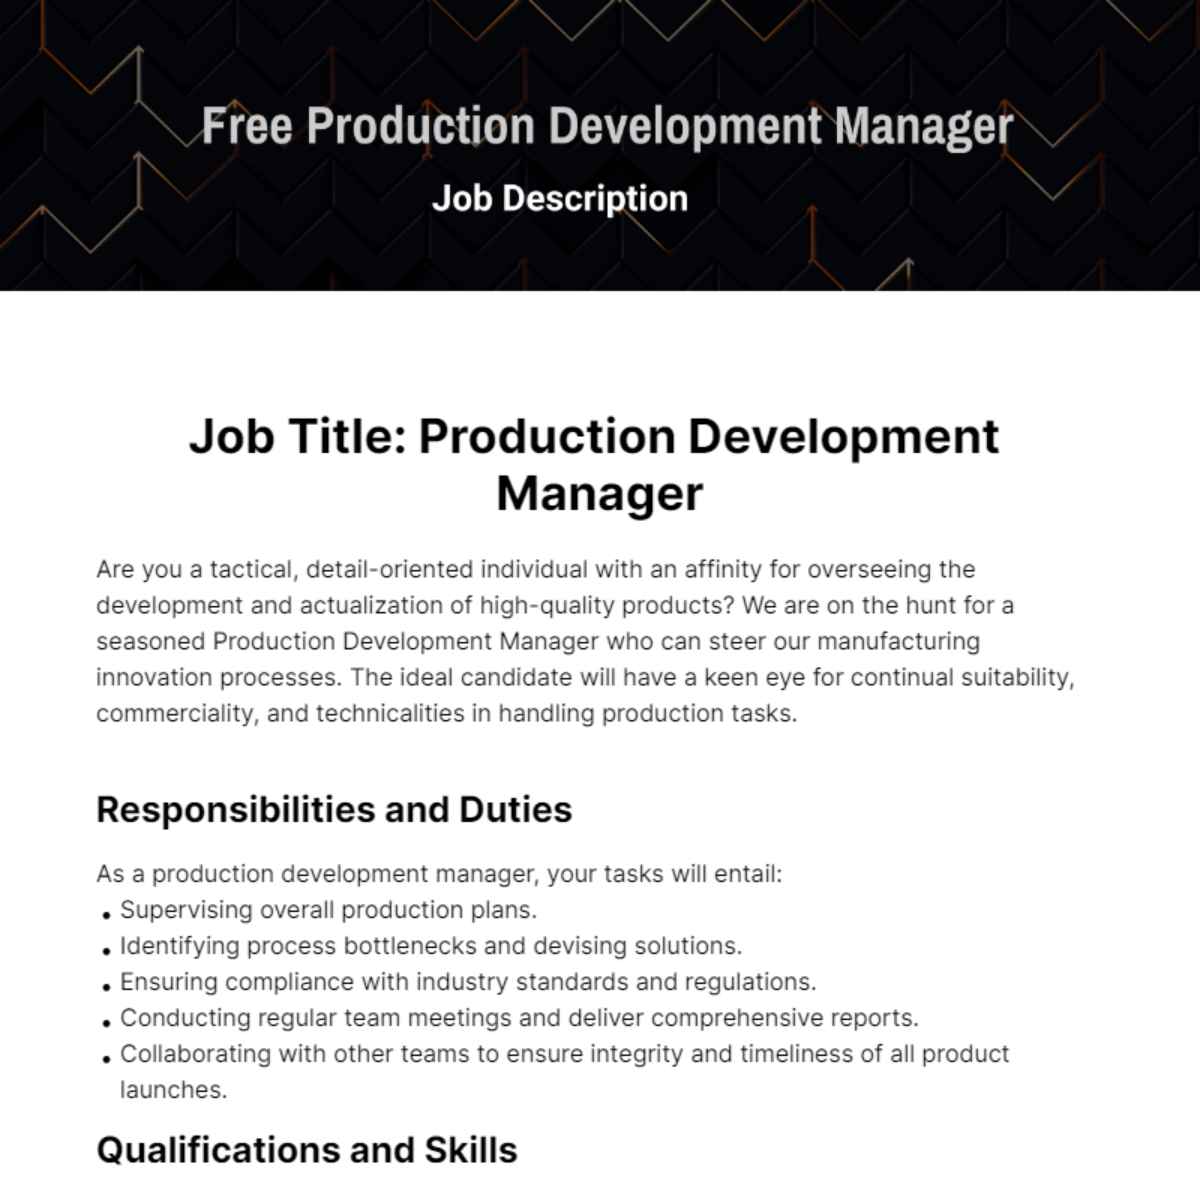 Free Production Development Manager Job Description Template